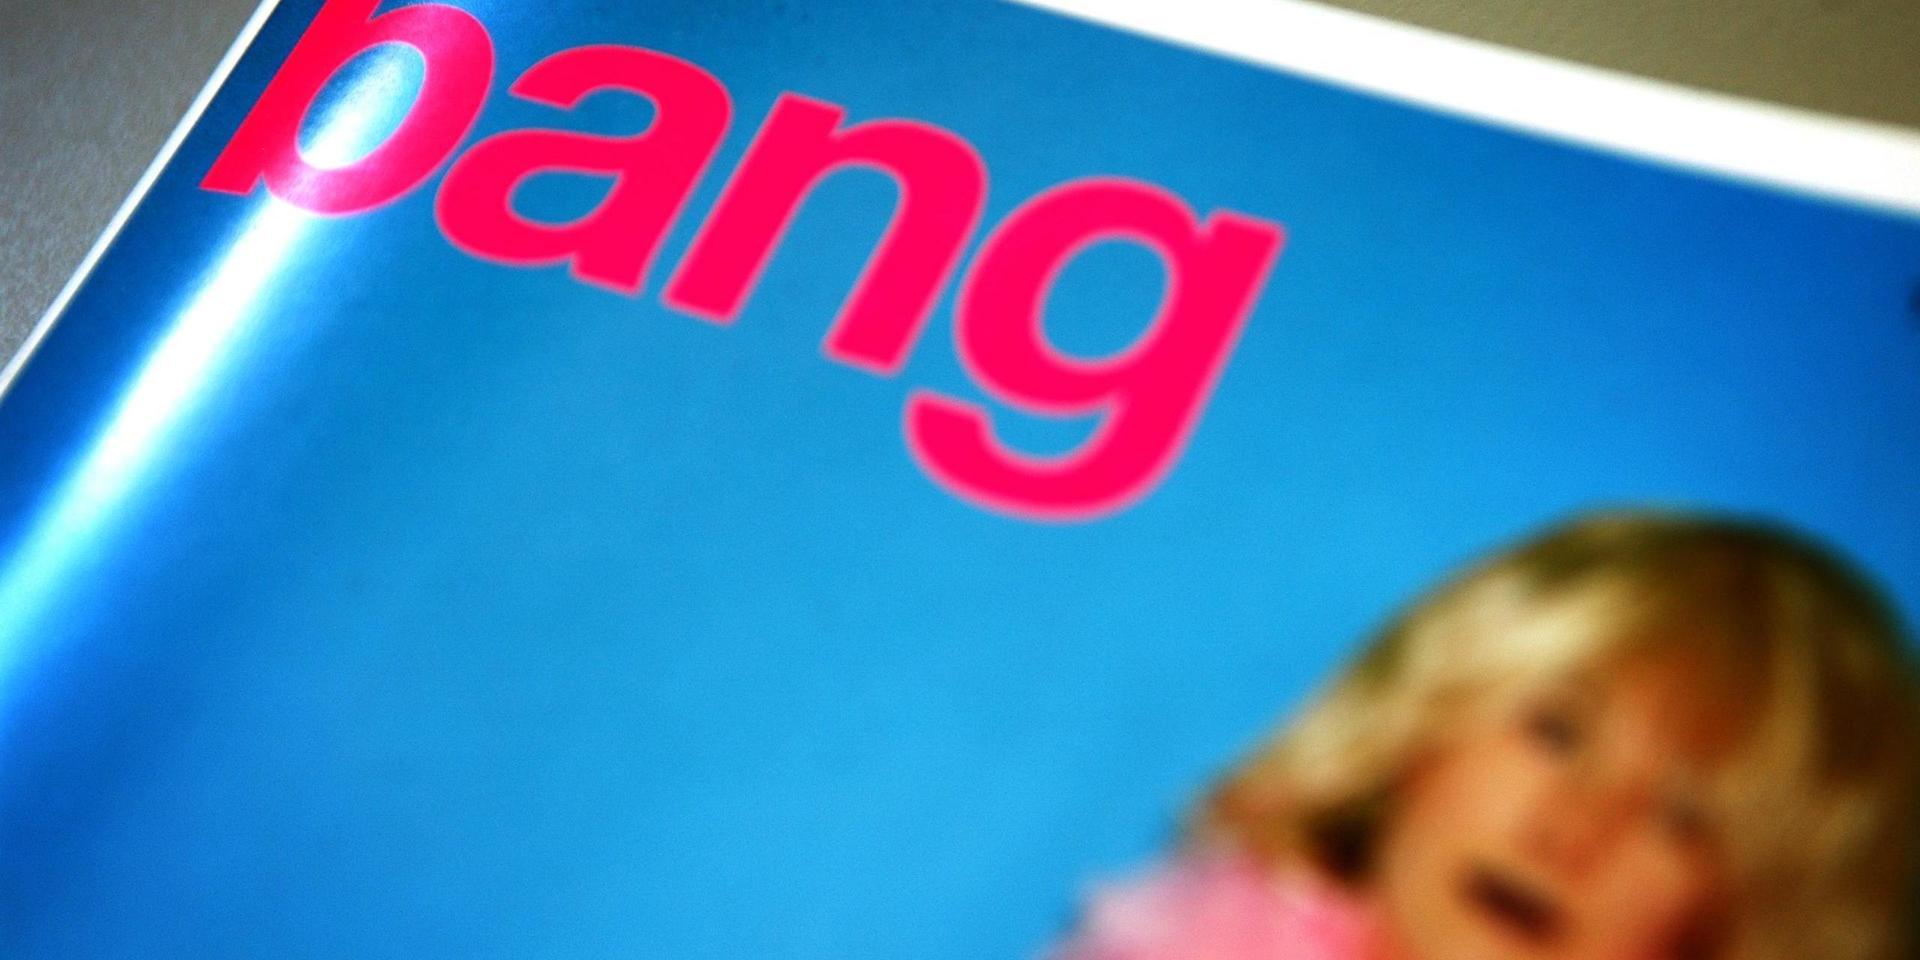 Tidskriften Bang har gått i konkurs. Arkivbild.